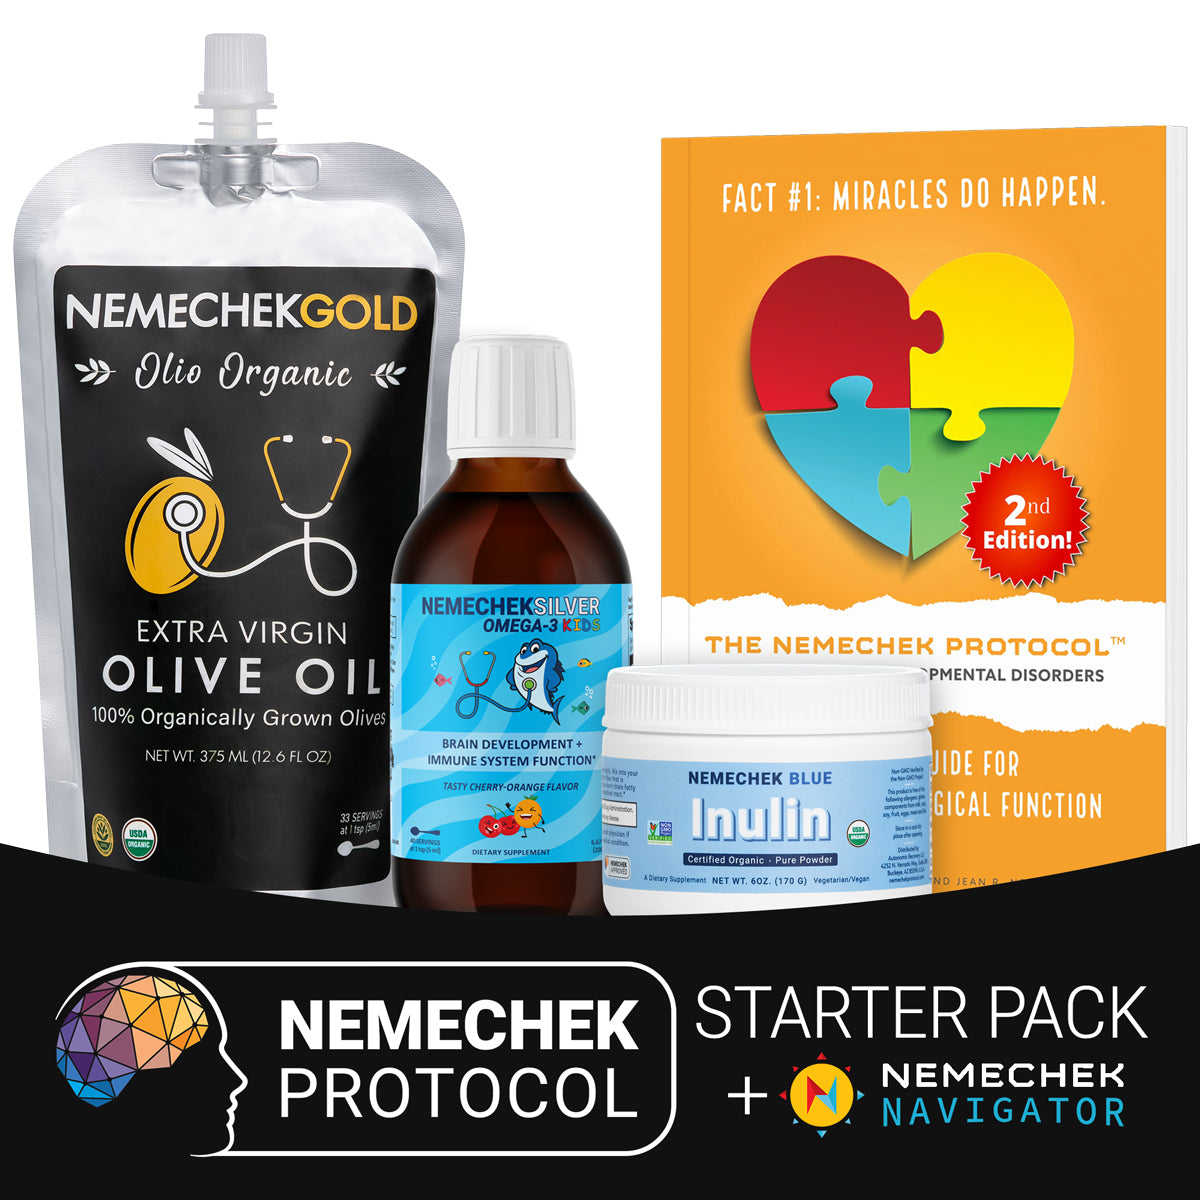 Paquete inicial de recuperación de protocolos + ¡Acceso gratuito a Nemechek Navigator!